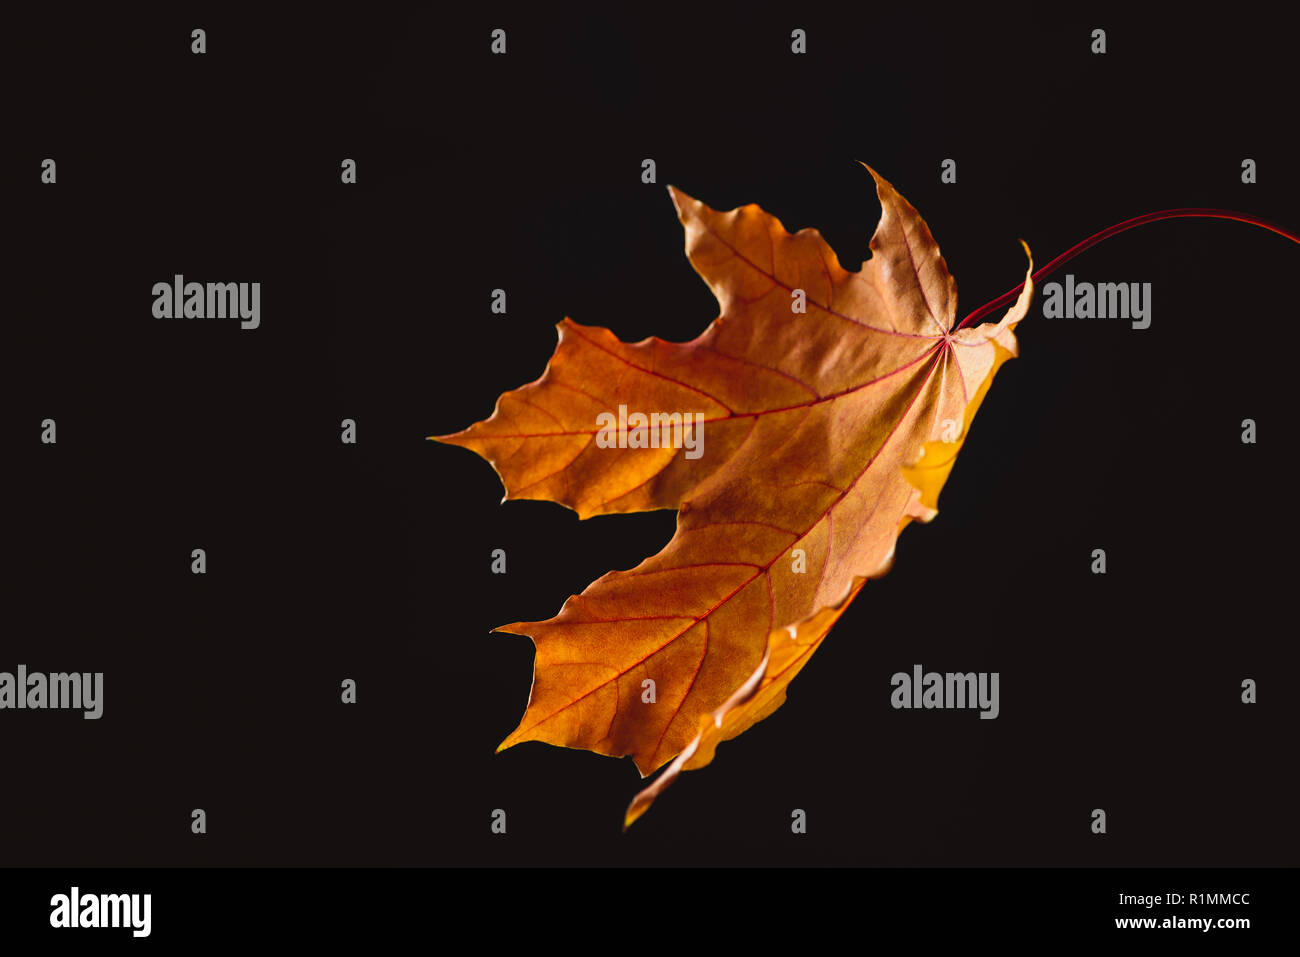 one falling orange maple leaf isolated on black, autumn background Stock Photo